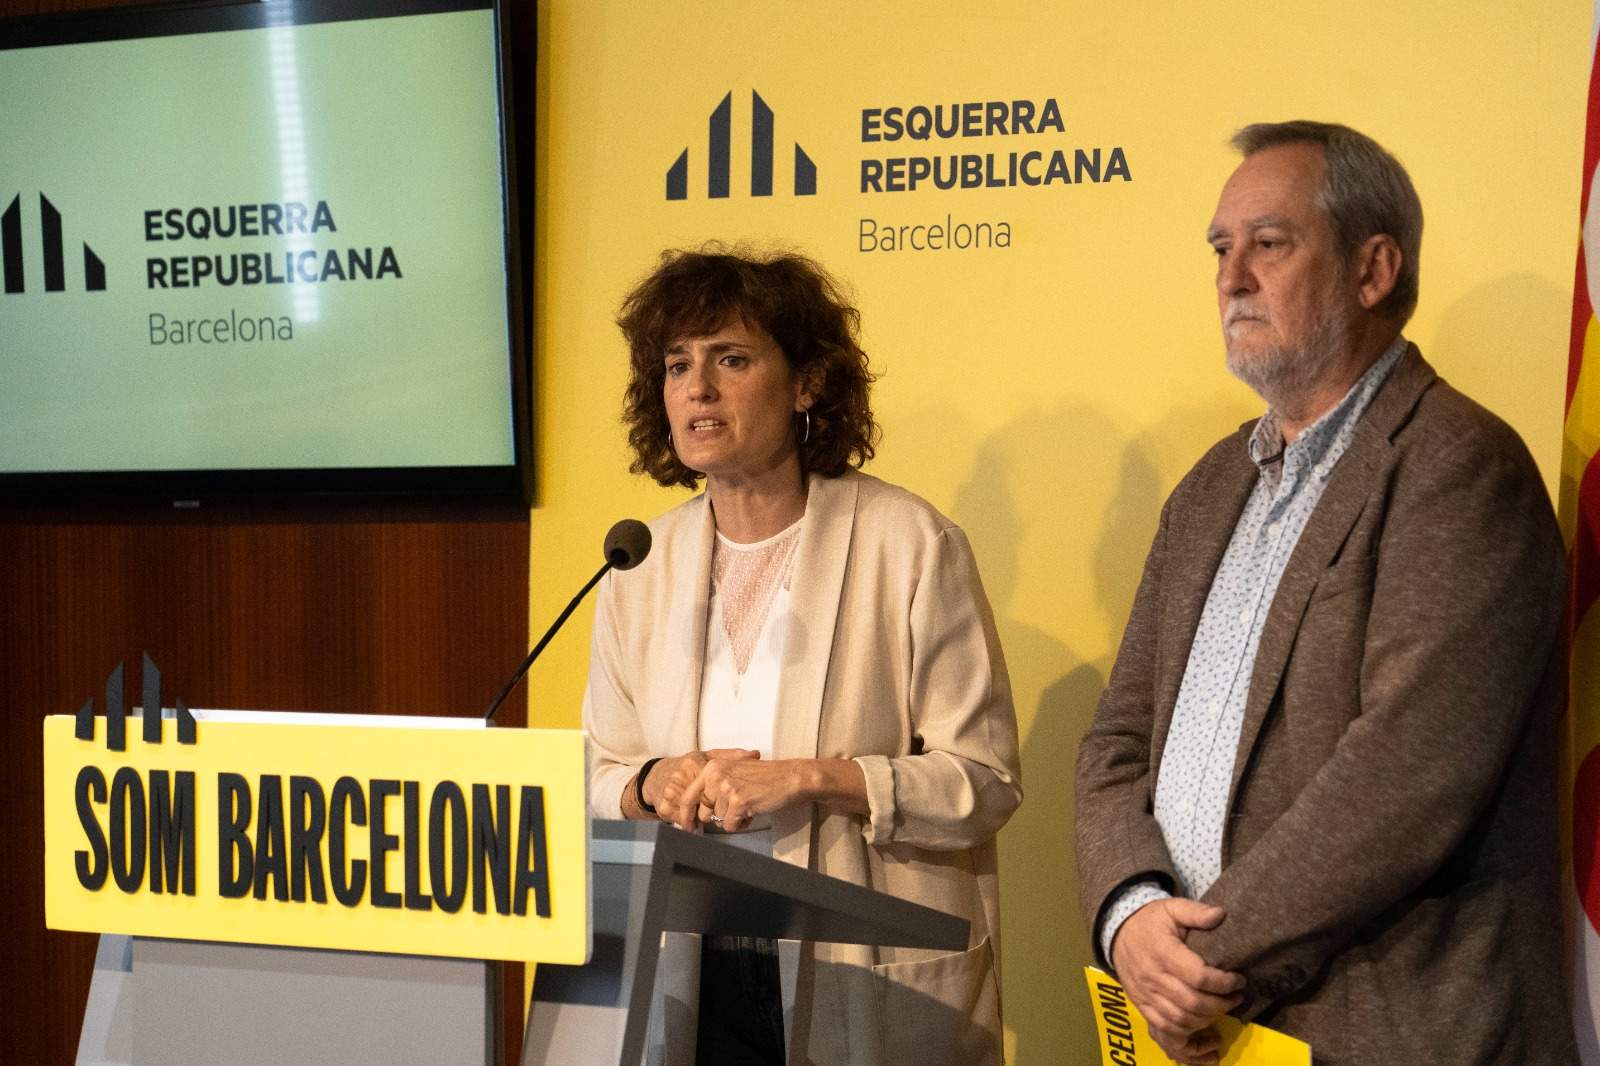 Turismo, derechos sociales y lengua catalana, áreas que gestionará ERC si entra en el gobierno de Barcelona